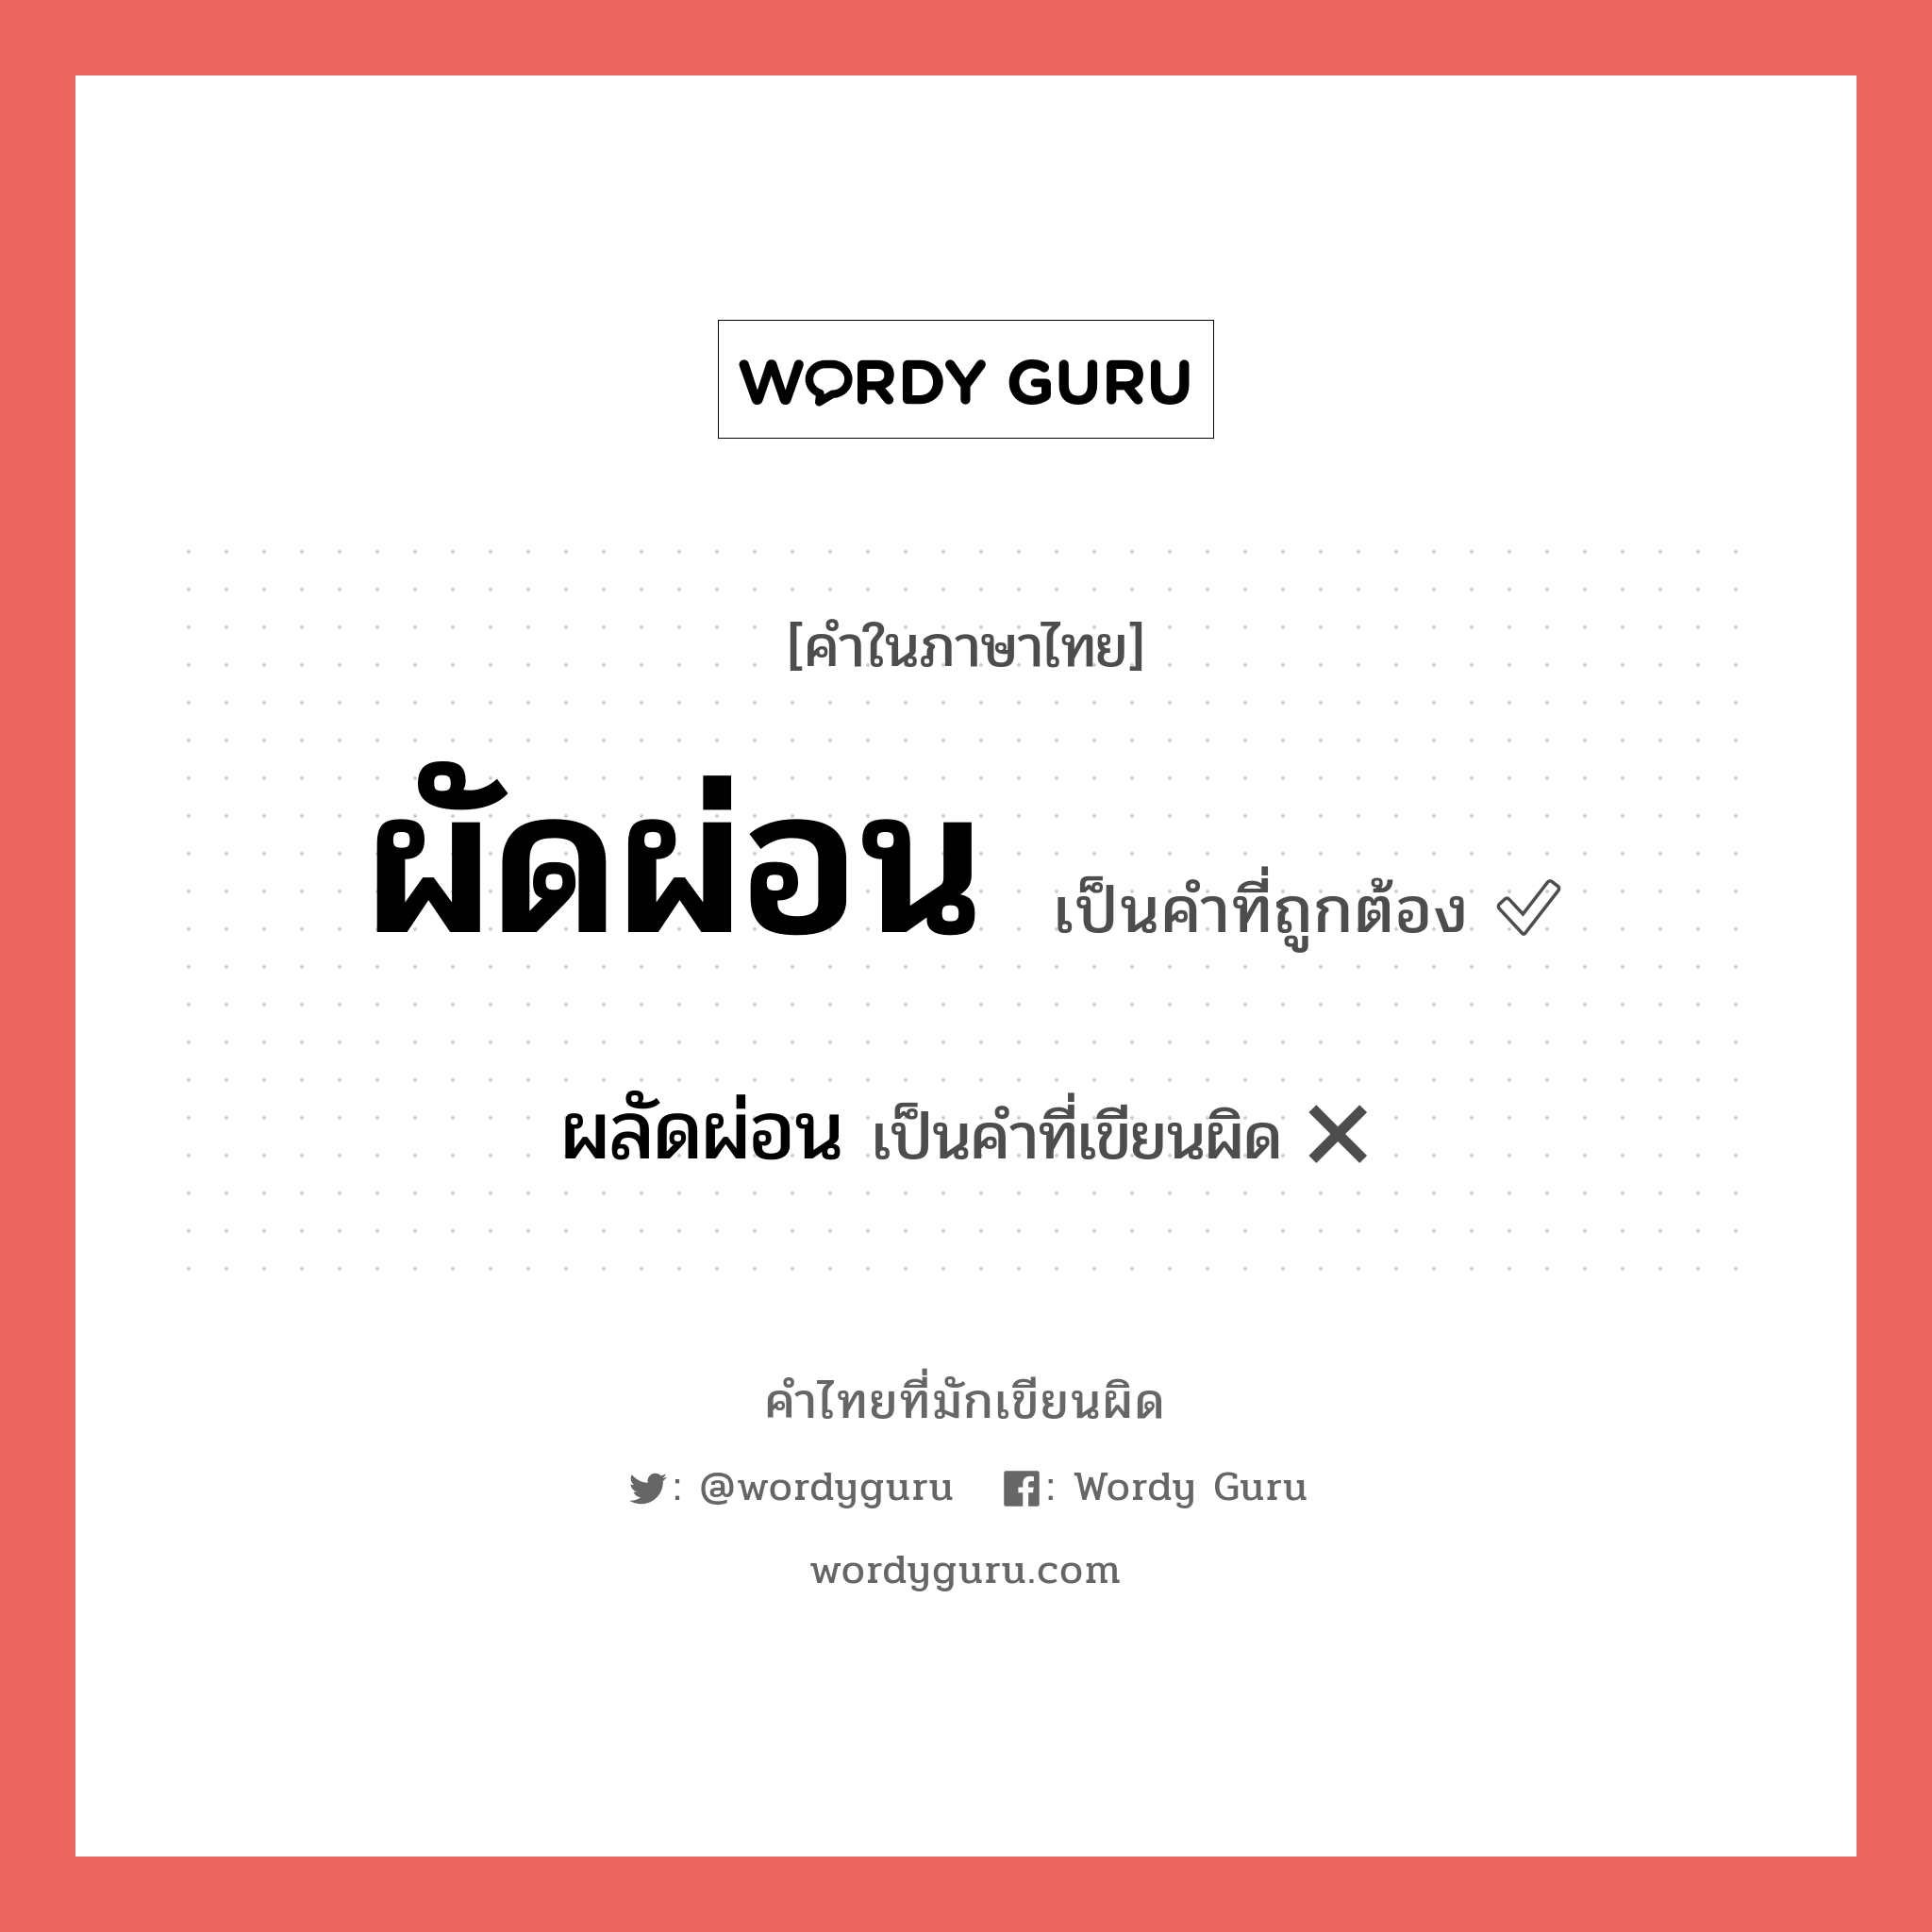 ผัดผ่อน หรือ ผลัดผ่อน คำไหนเขียนถูก?, คำในภาษาไทยที่มักเขียนผิด ผัดผ่อน คำที่ผิด ❌ ผลัดผ่อน